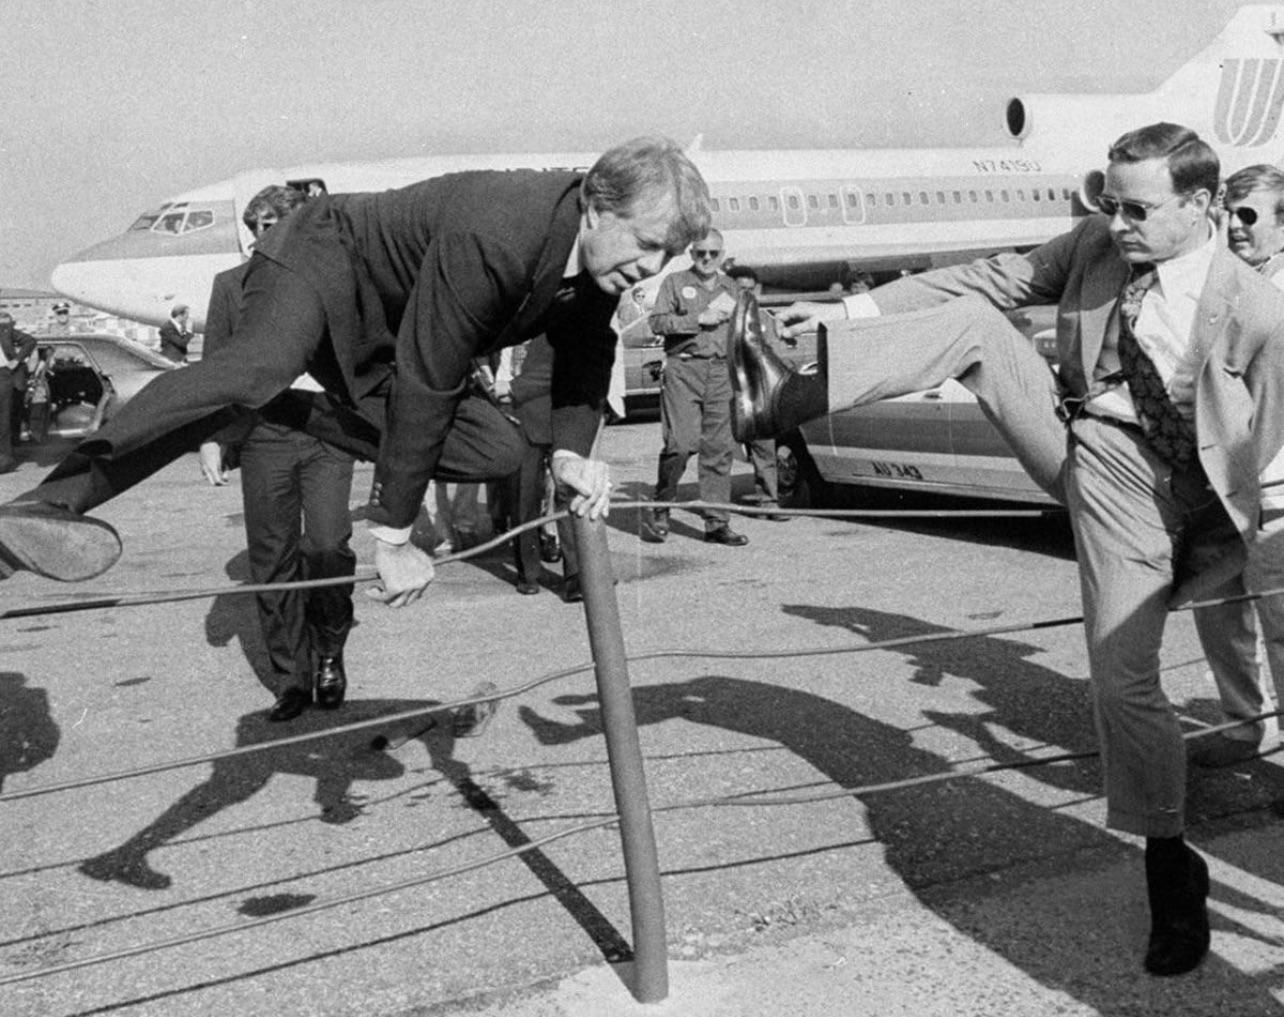 Jimmy Carter ducks another Ronald Reagan pot shot from a 747